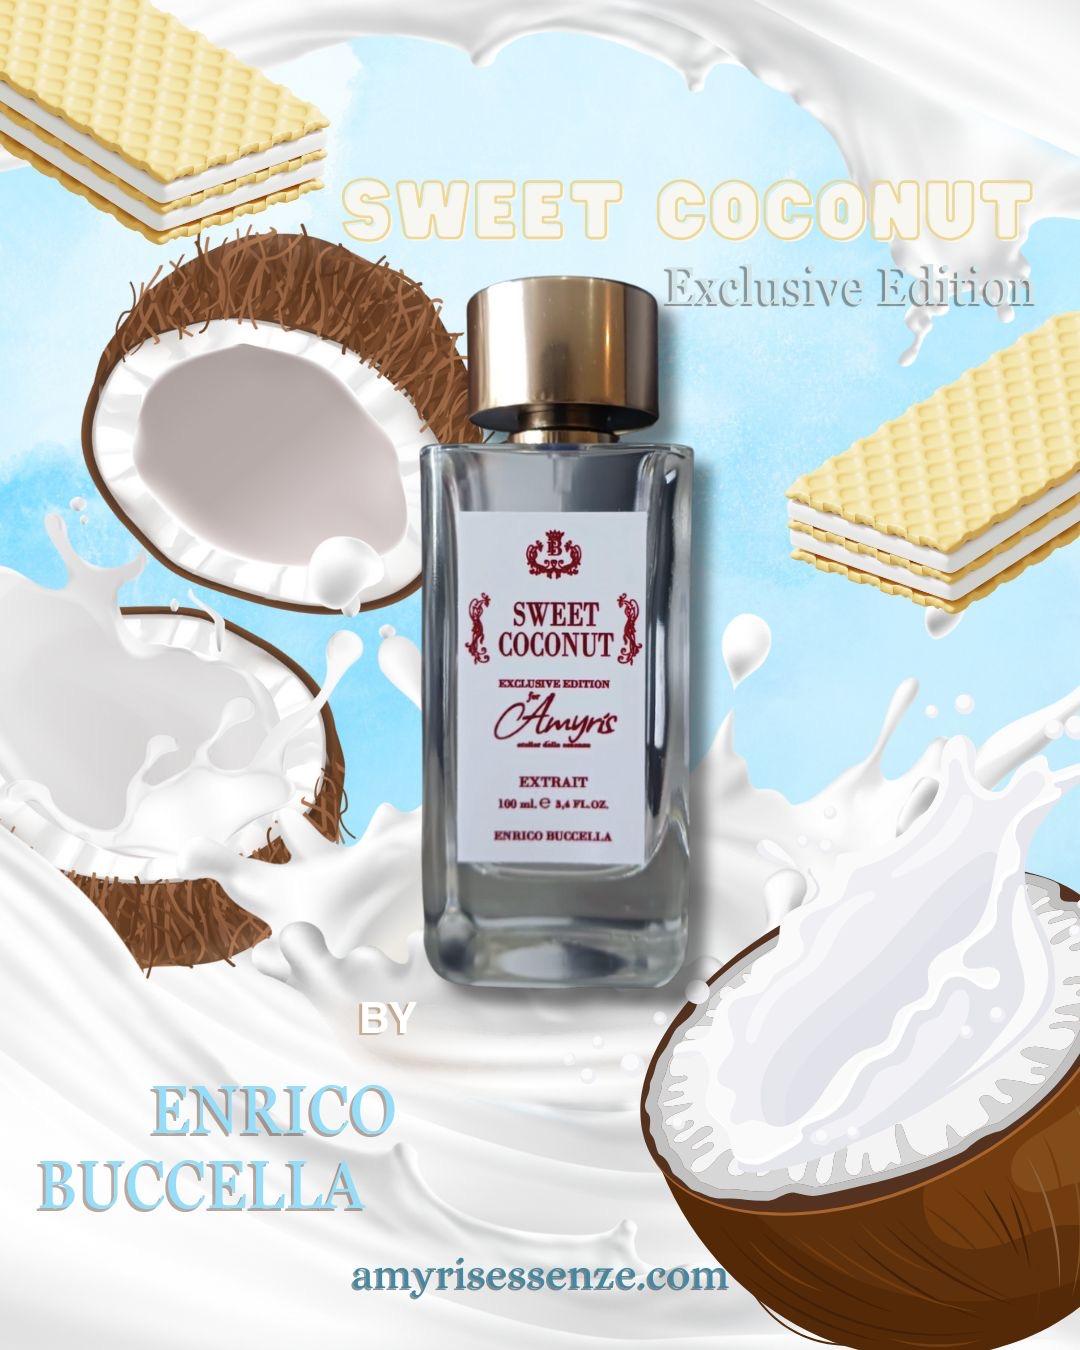  Cerchi Nell'Acqua Sweet Coconut exclusive edition